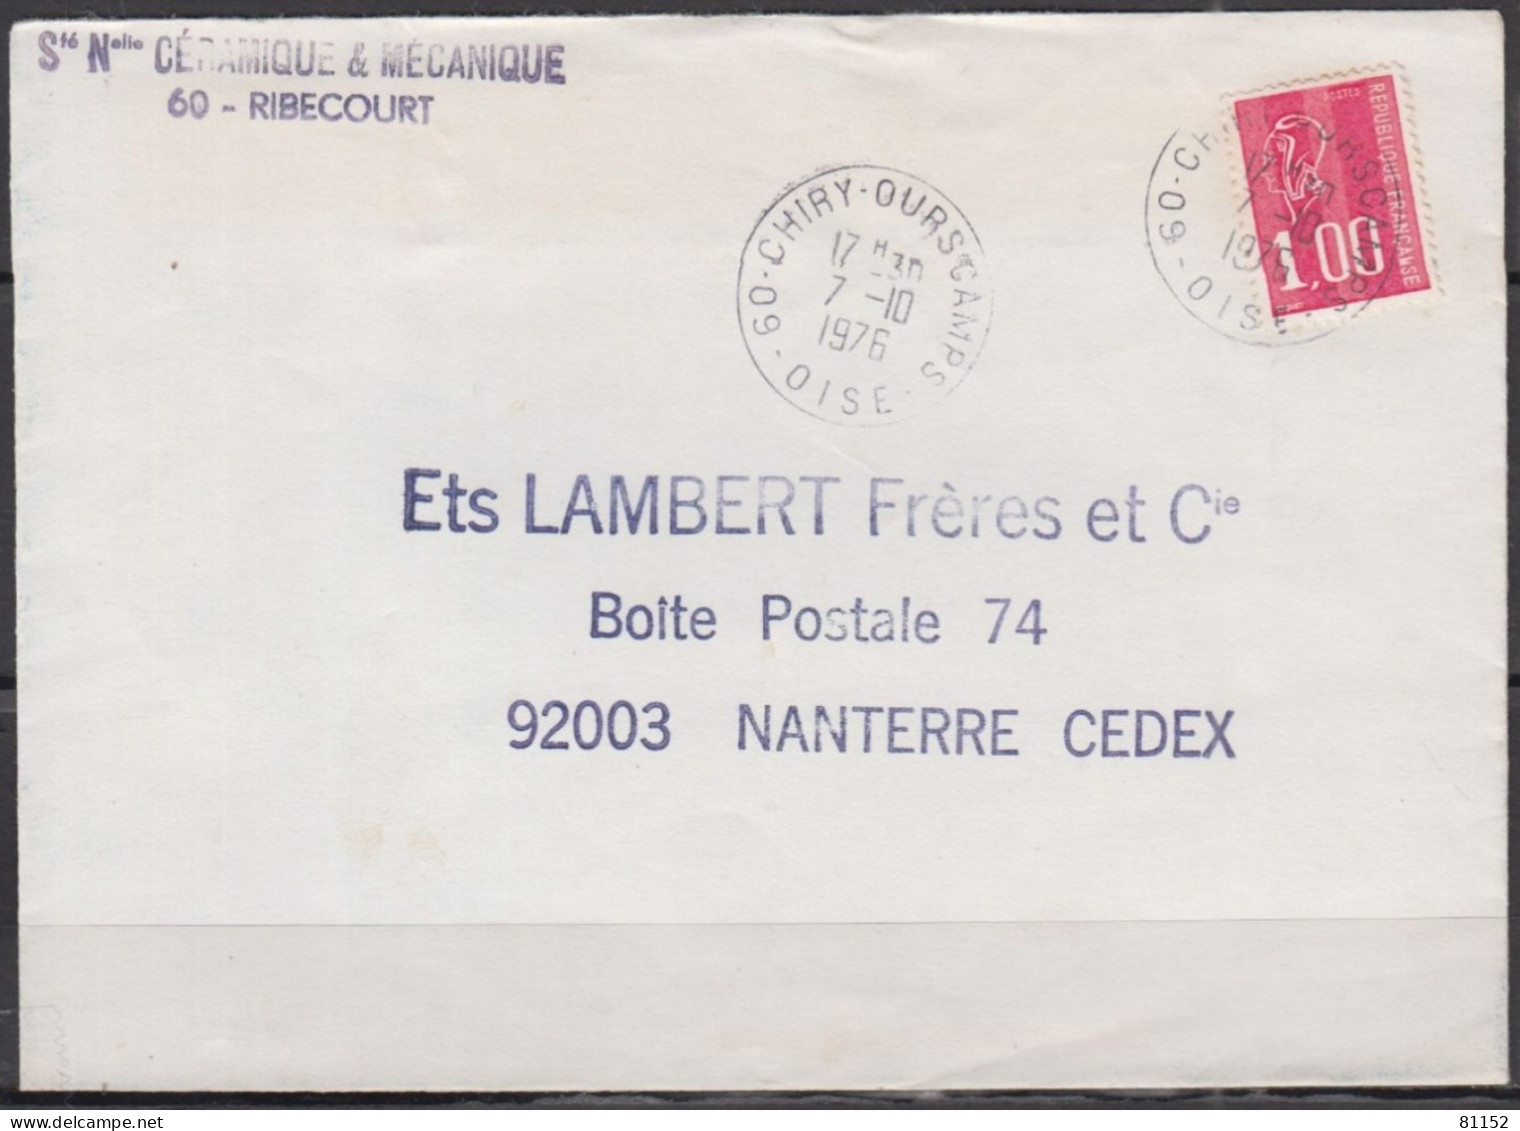 2 Lettres  Pub De 60 RIBECOURT 1976 Et 1977 Pour 92 NANTERRE Avec Mne De BEQUET 1.00F Postées à 60 CHIRY-OURSCAMPS - 1971-1976 Marianne (Béquet)